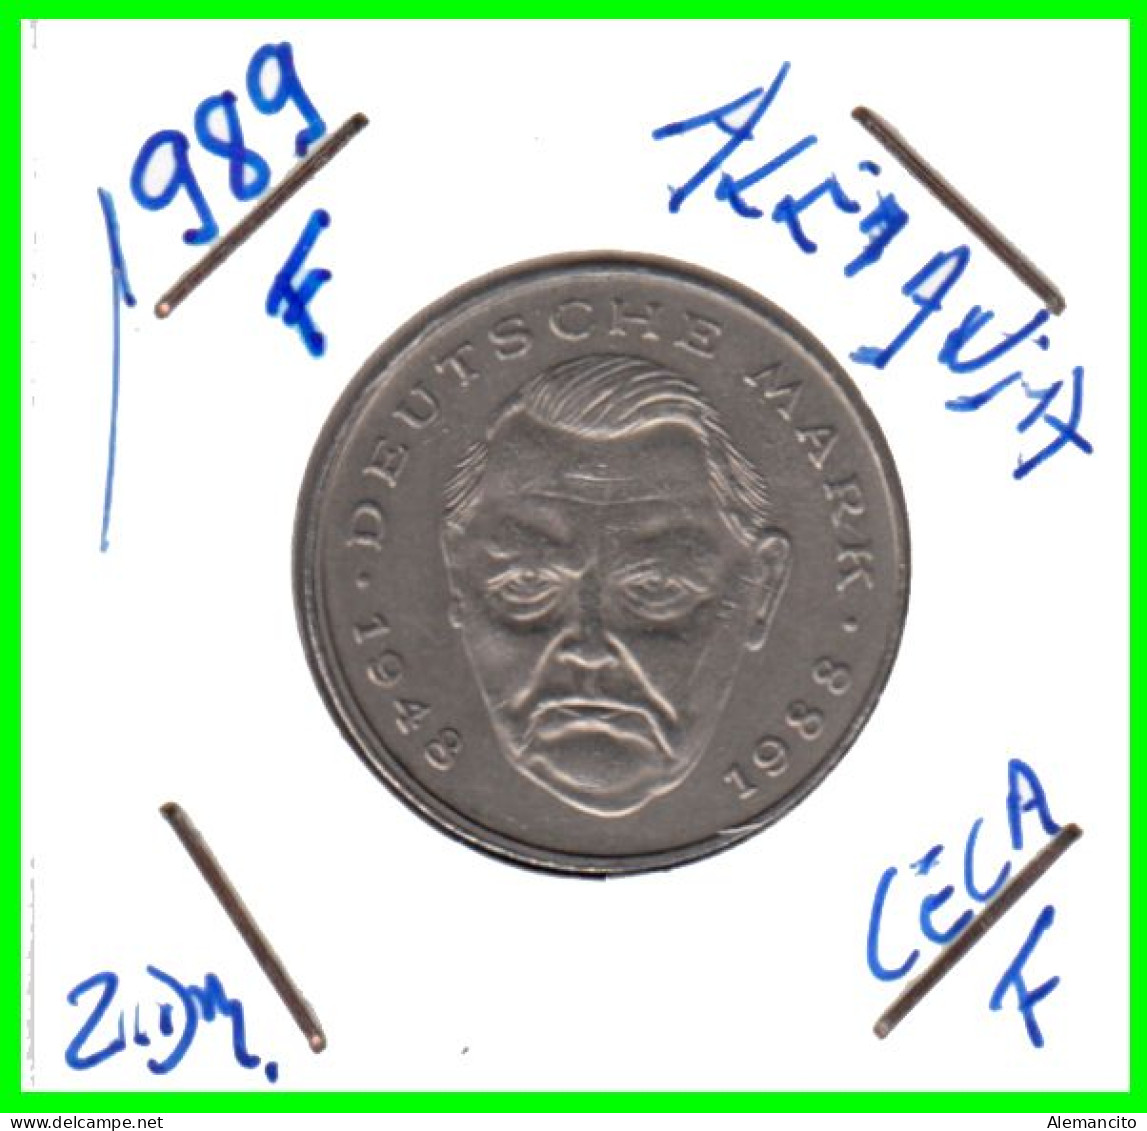 COIN ALEMANIA ( GERMANY ) MONEDA DE 2.00 DM AÑO 1989 CECA-F - STTUCART -LUDWIG ERHARD - NÍQUEL - 2 Mark